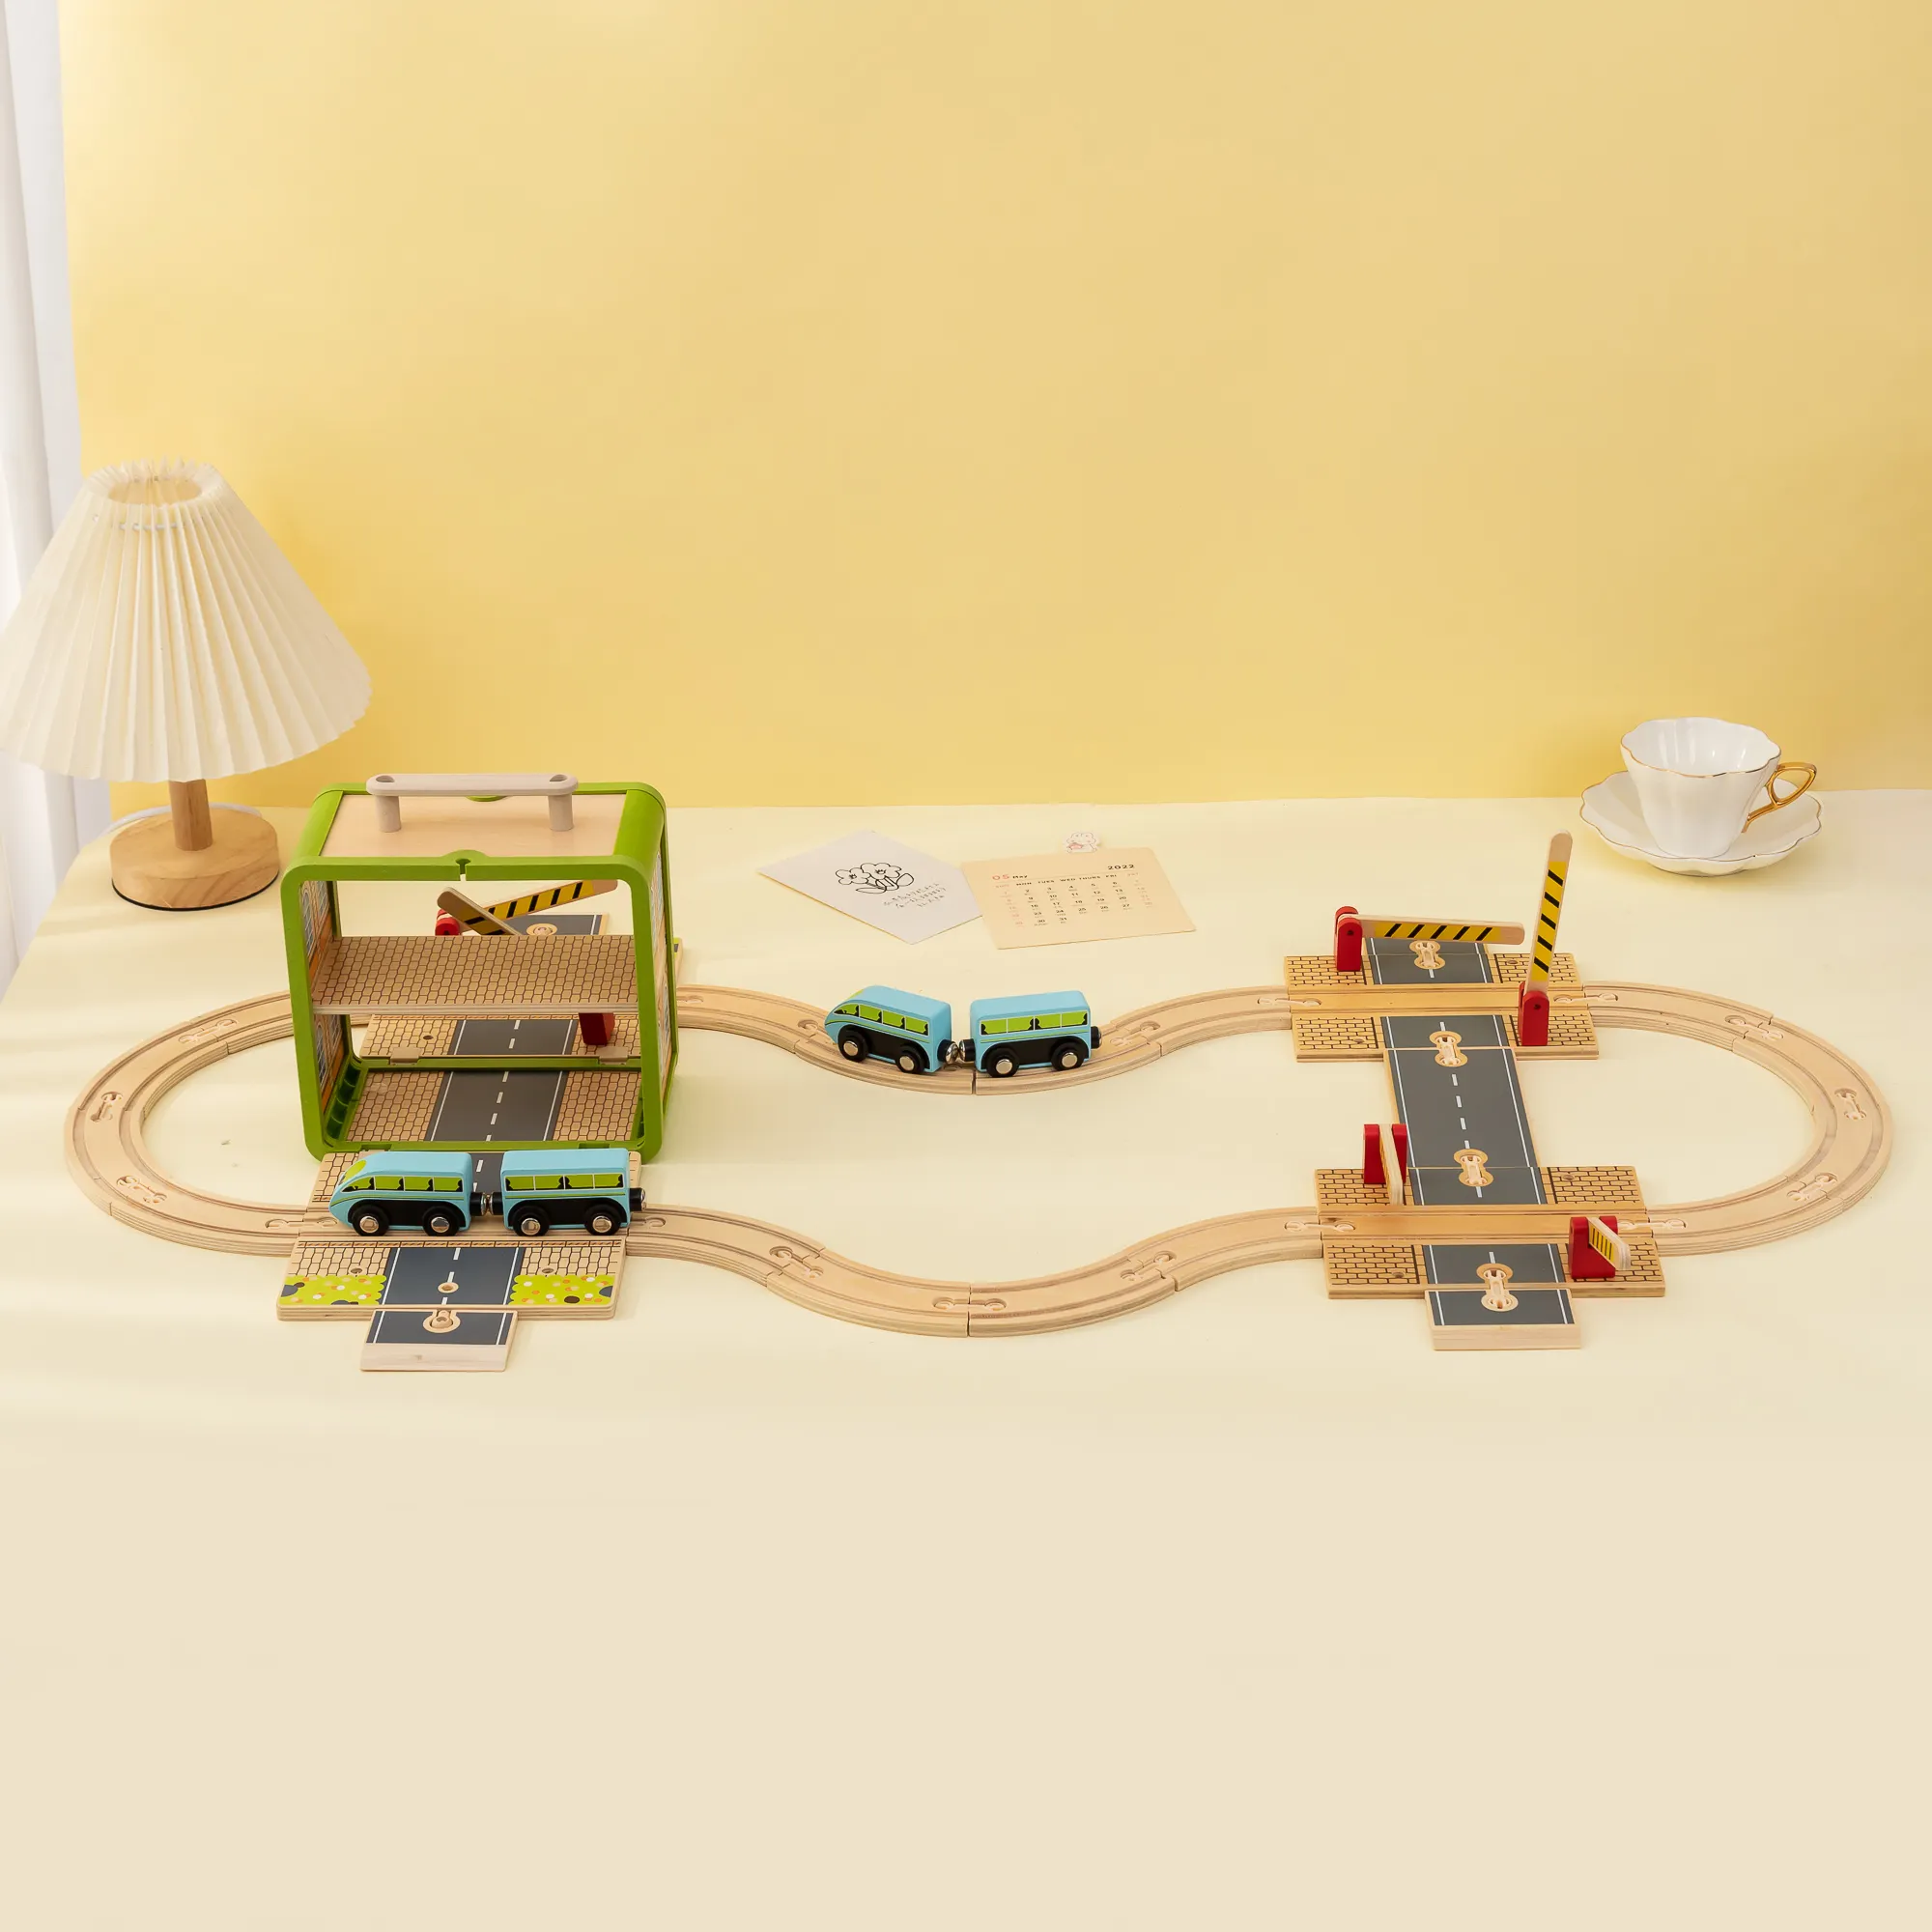 UDEAS OEM Eisenbahn Spielhaus Auto Spiel aufbewahrbares Karton-Set hölzernes Zugschienen-Spielzeug für Kinder